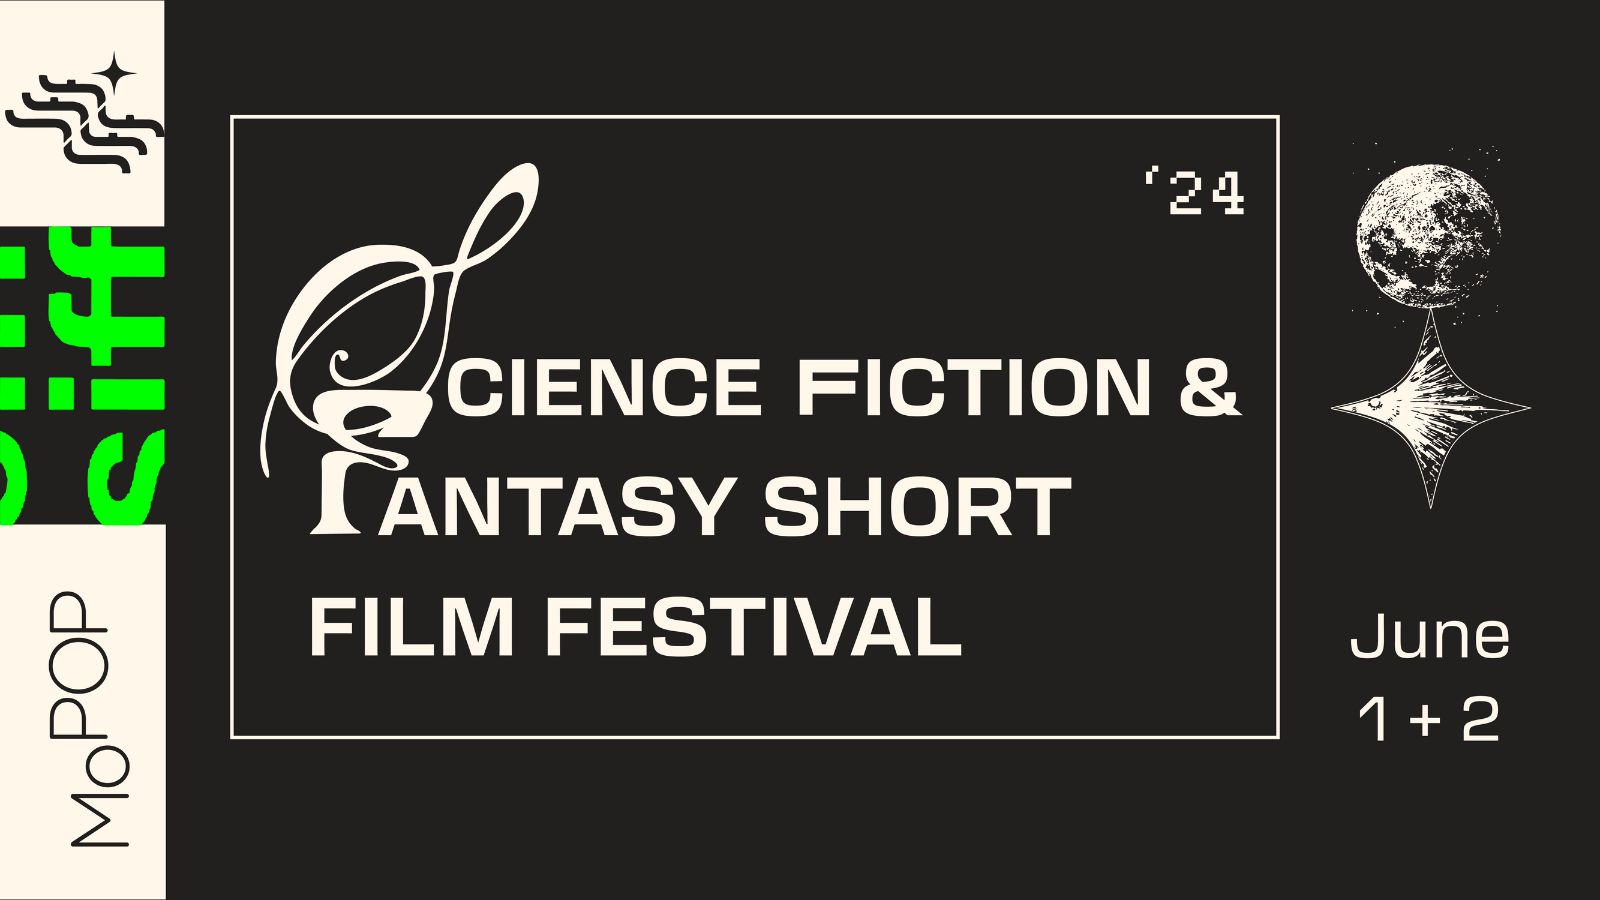 Science Fiction + Fantasy Short Film Festival